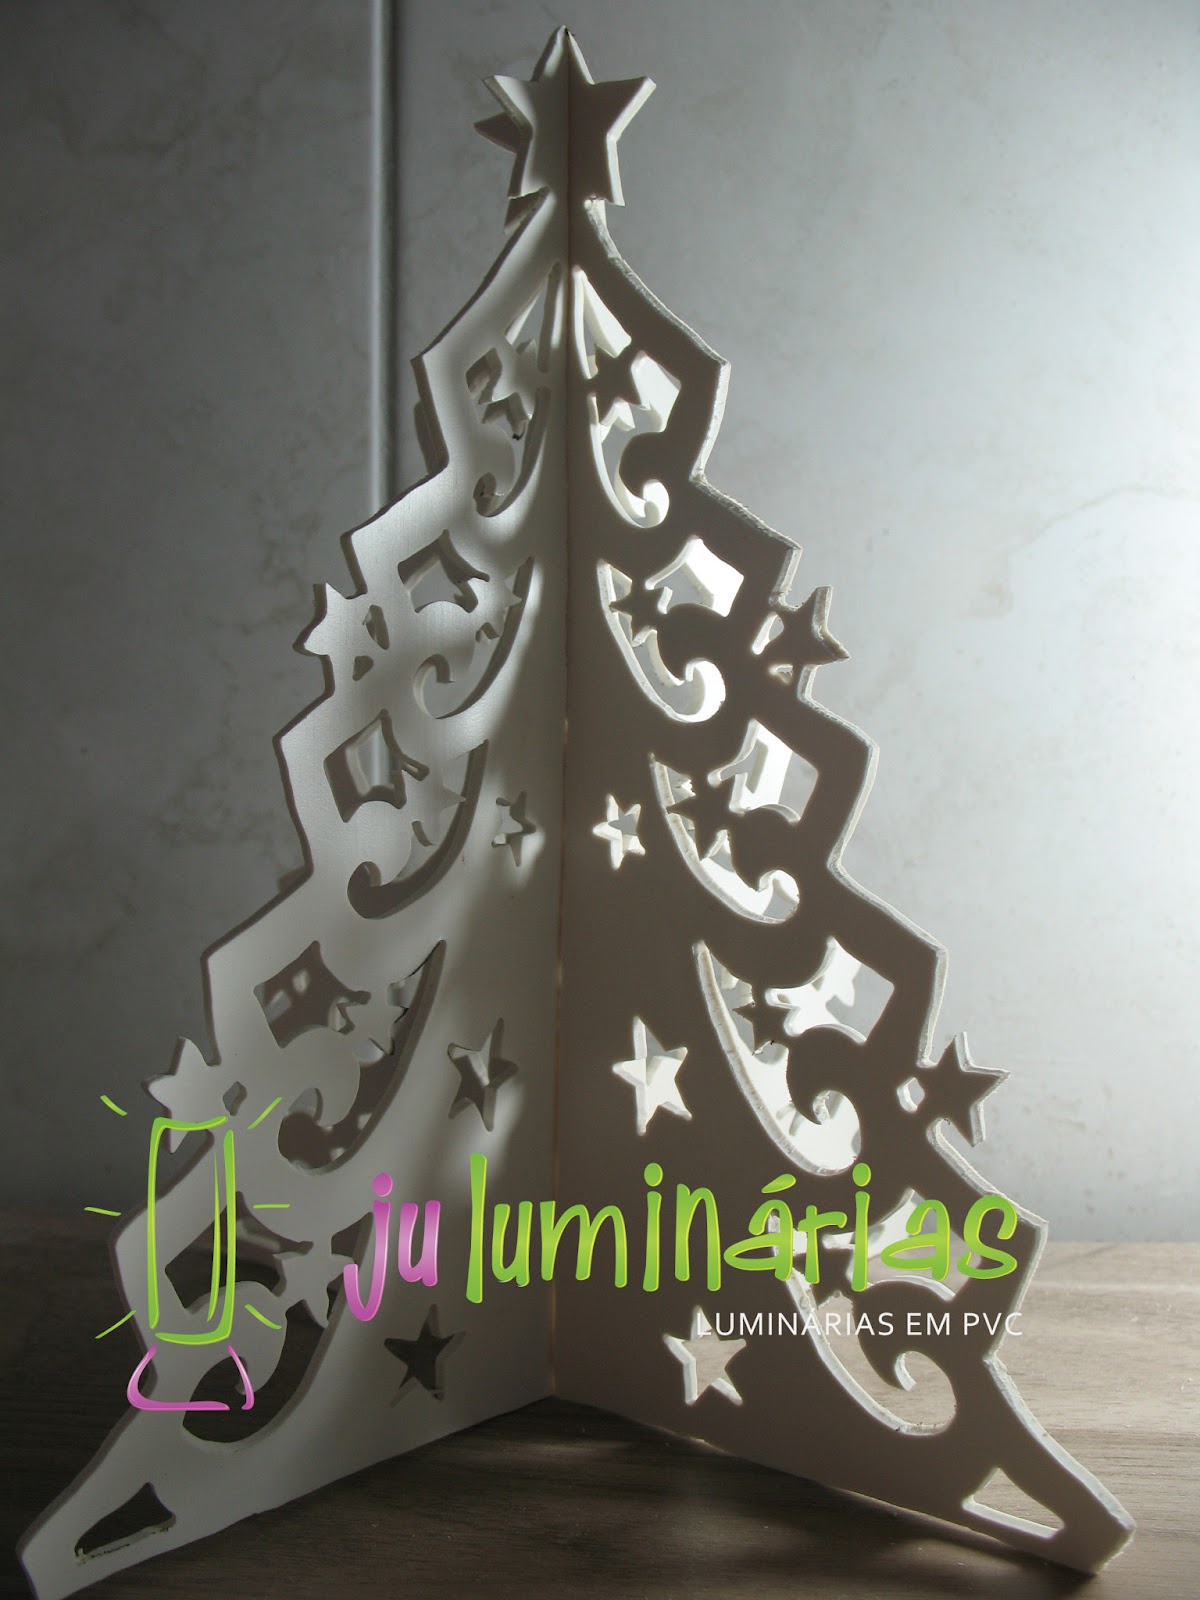 Ju Luminárias em PVC: Luminária em PVC e Escultura Árvore de Natal